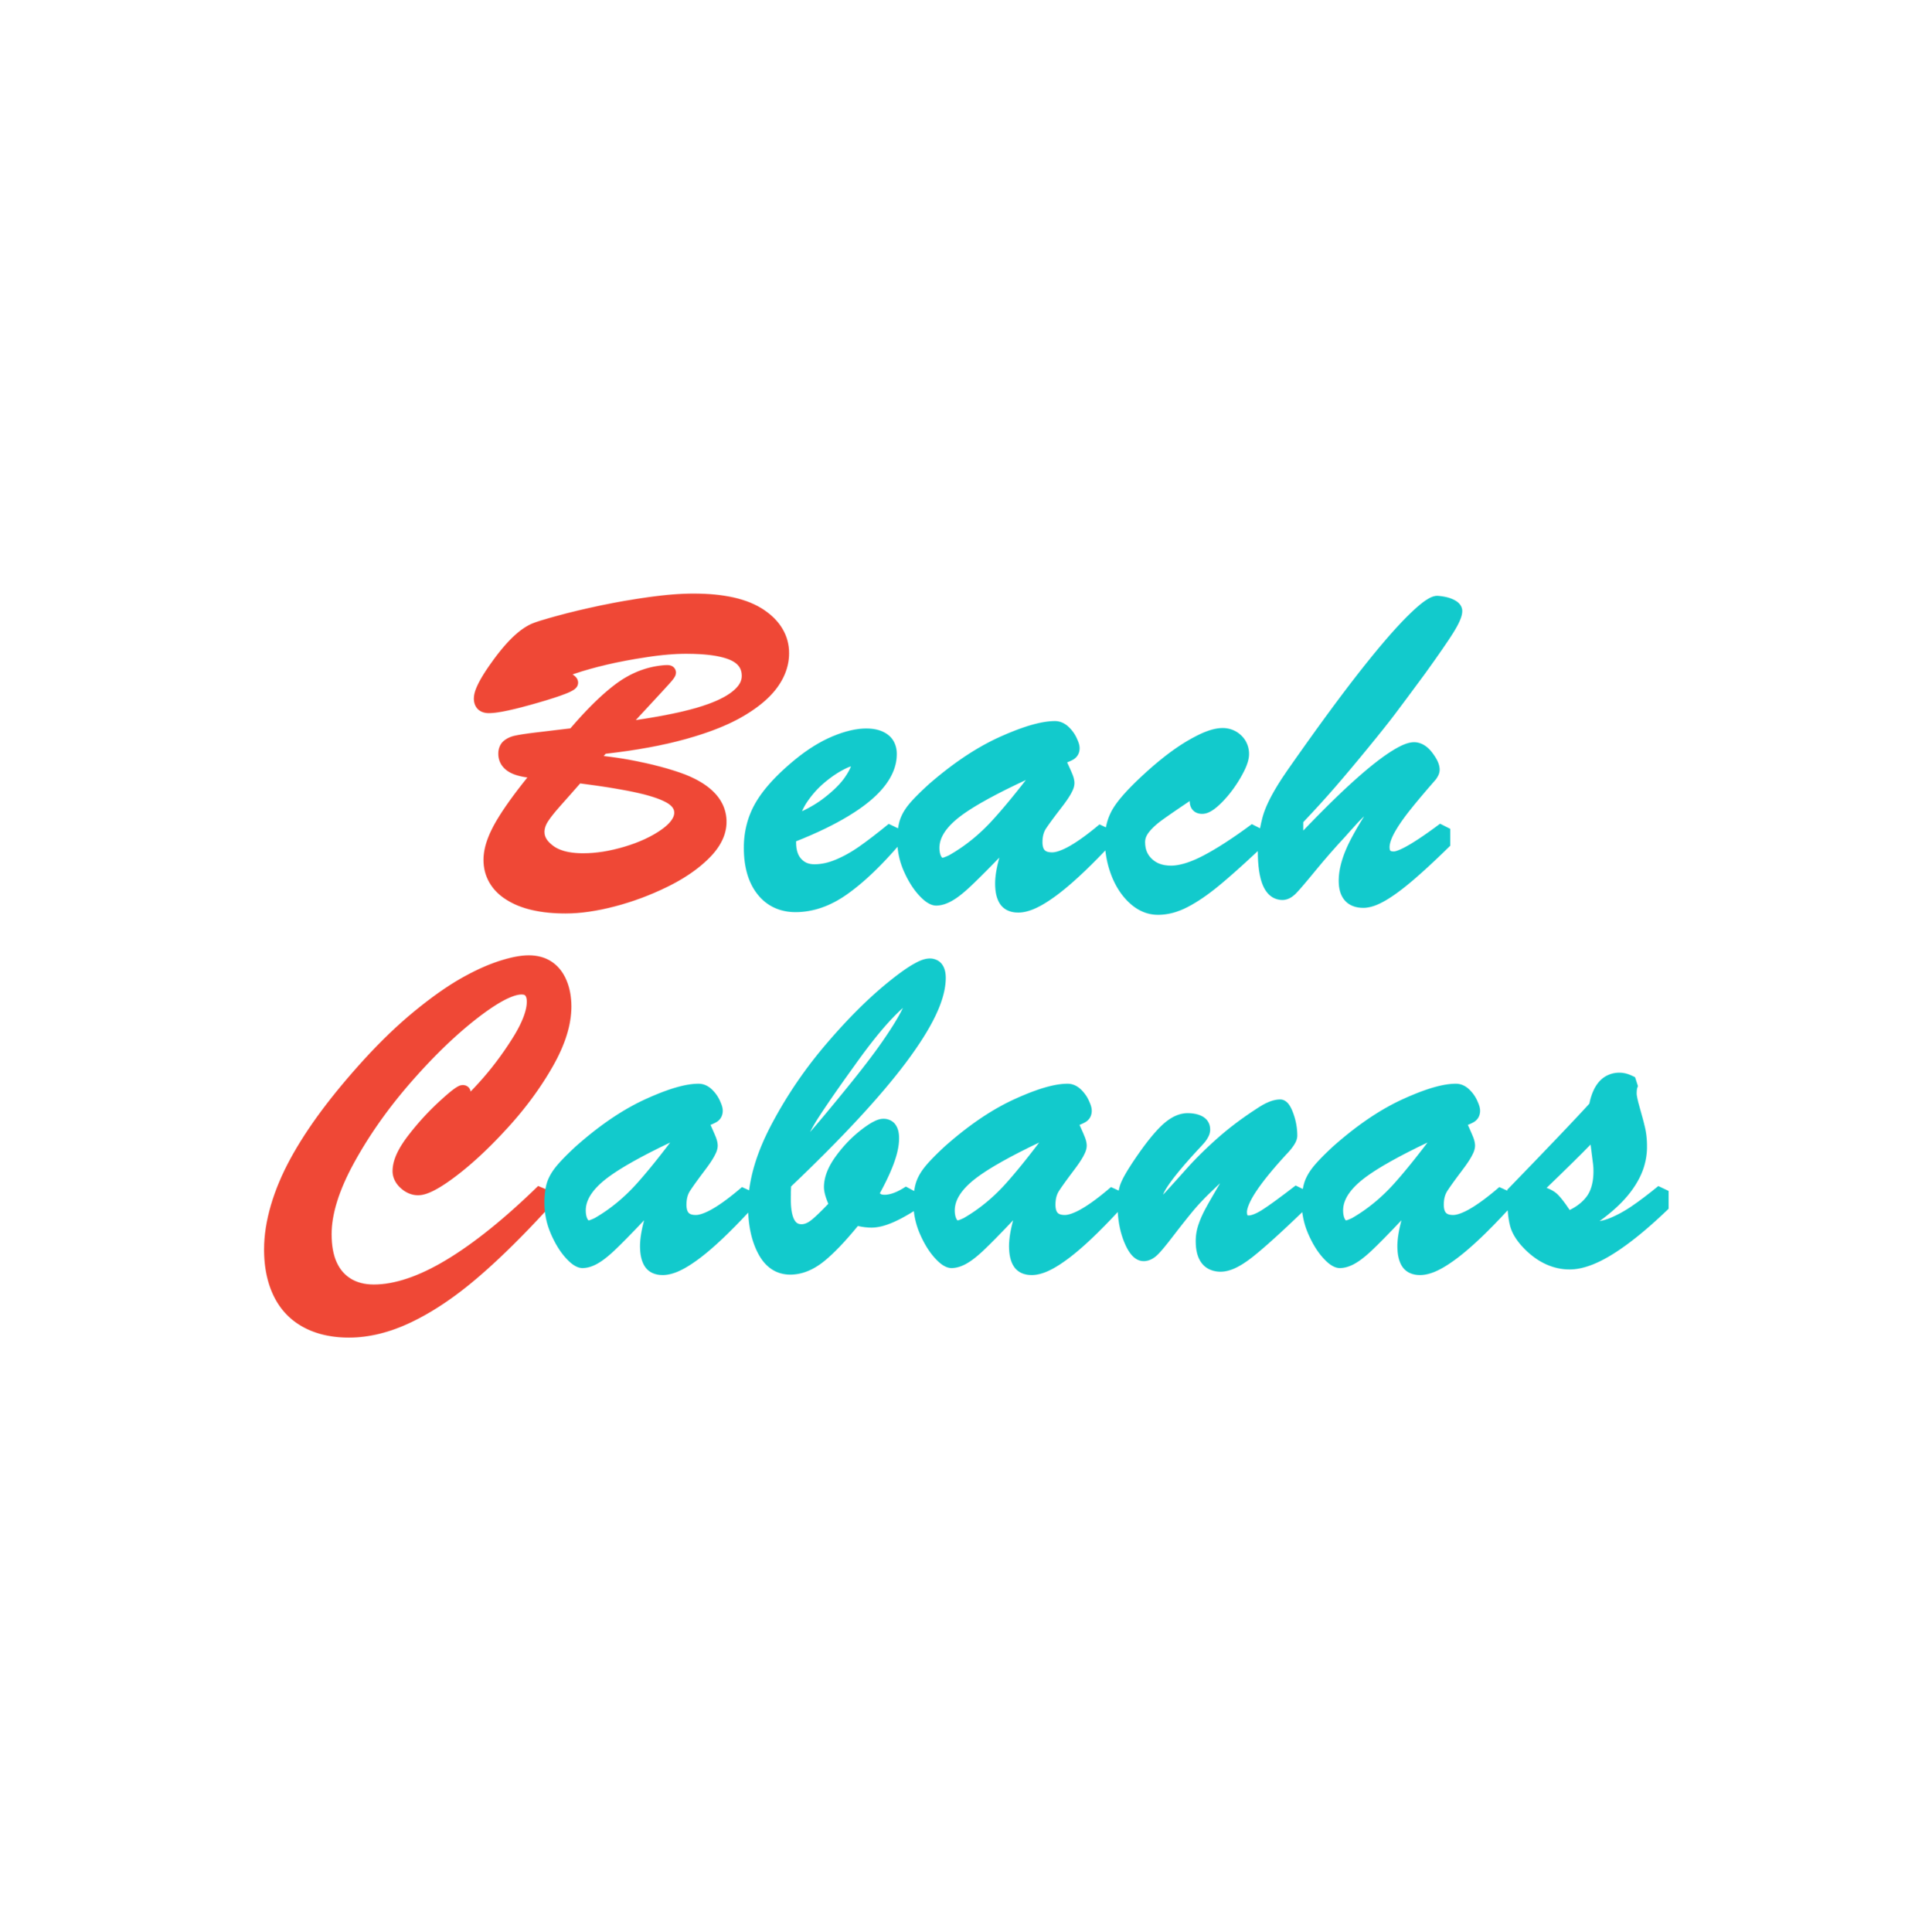 Beach Cabanas